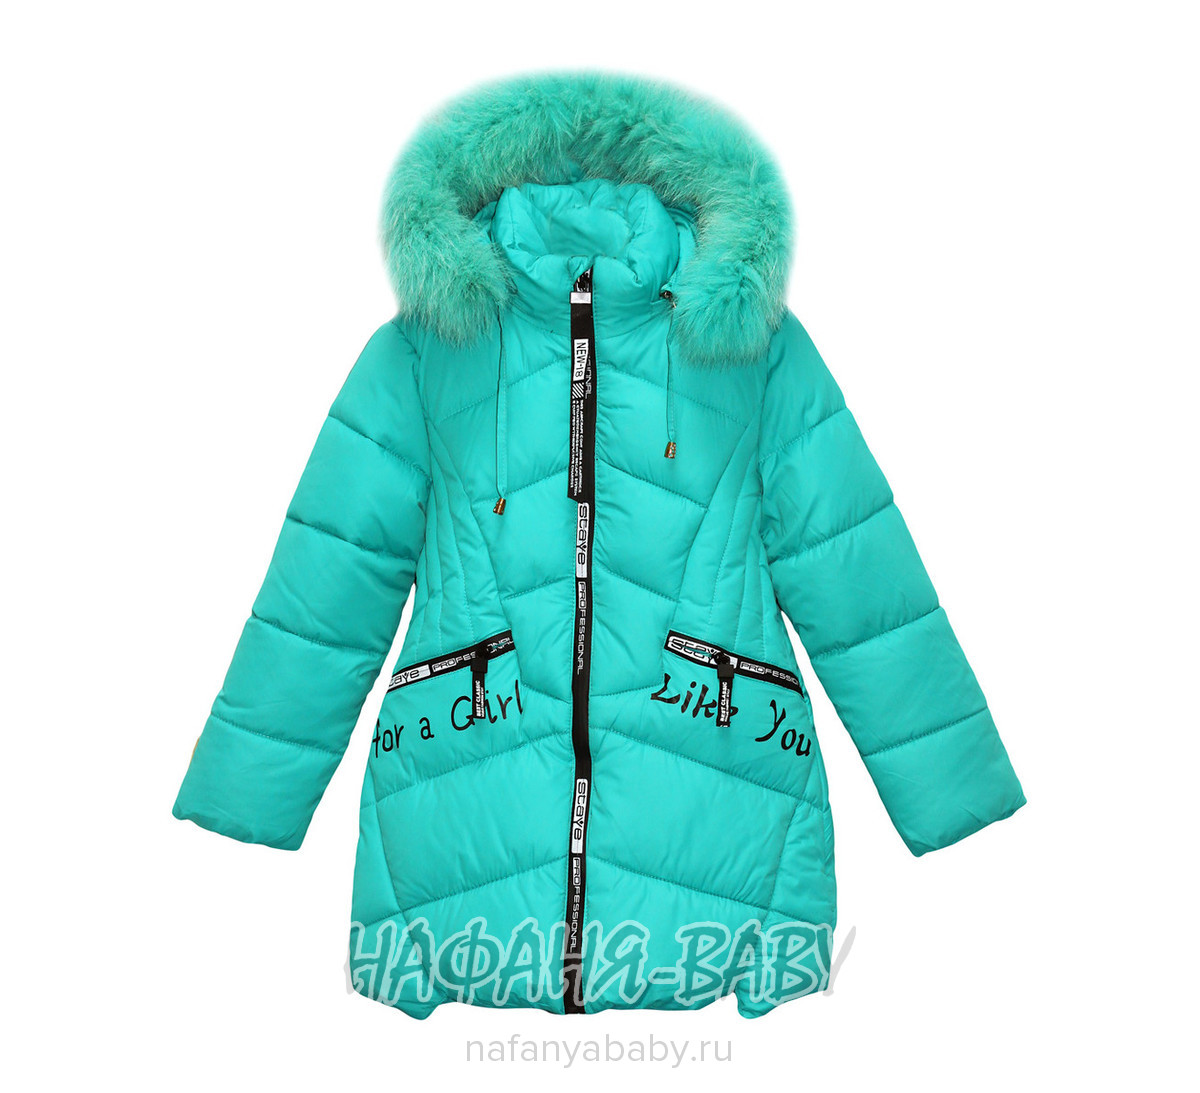 Детская зимняя куртка L-Z арт: 2715, 5-9 лет, оптом Китай (Пекин)